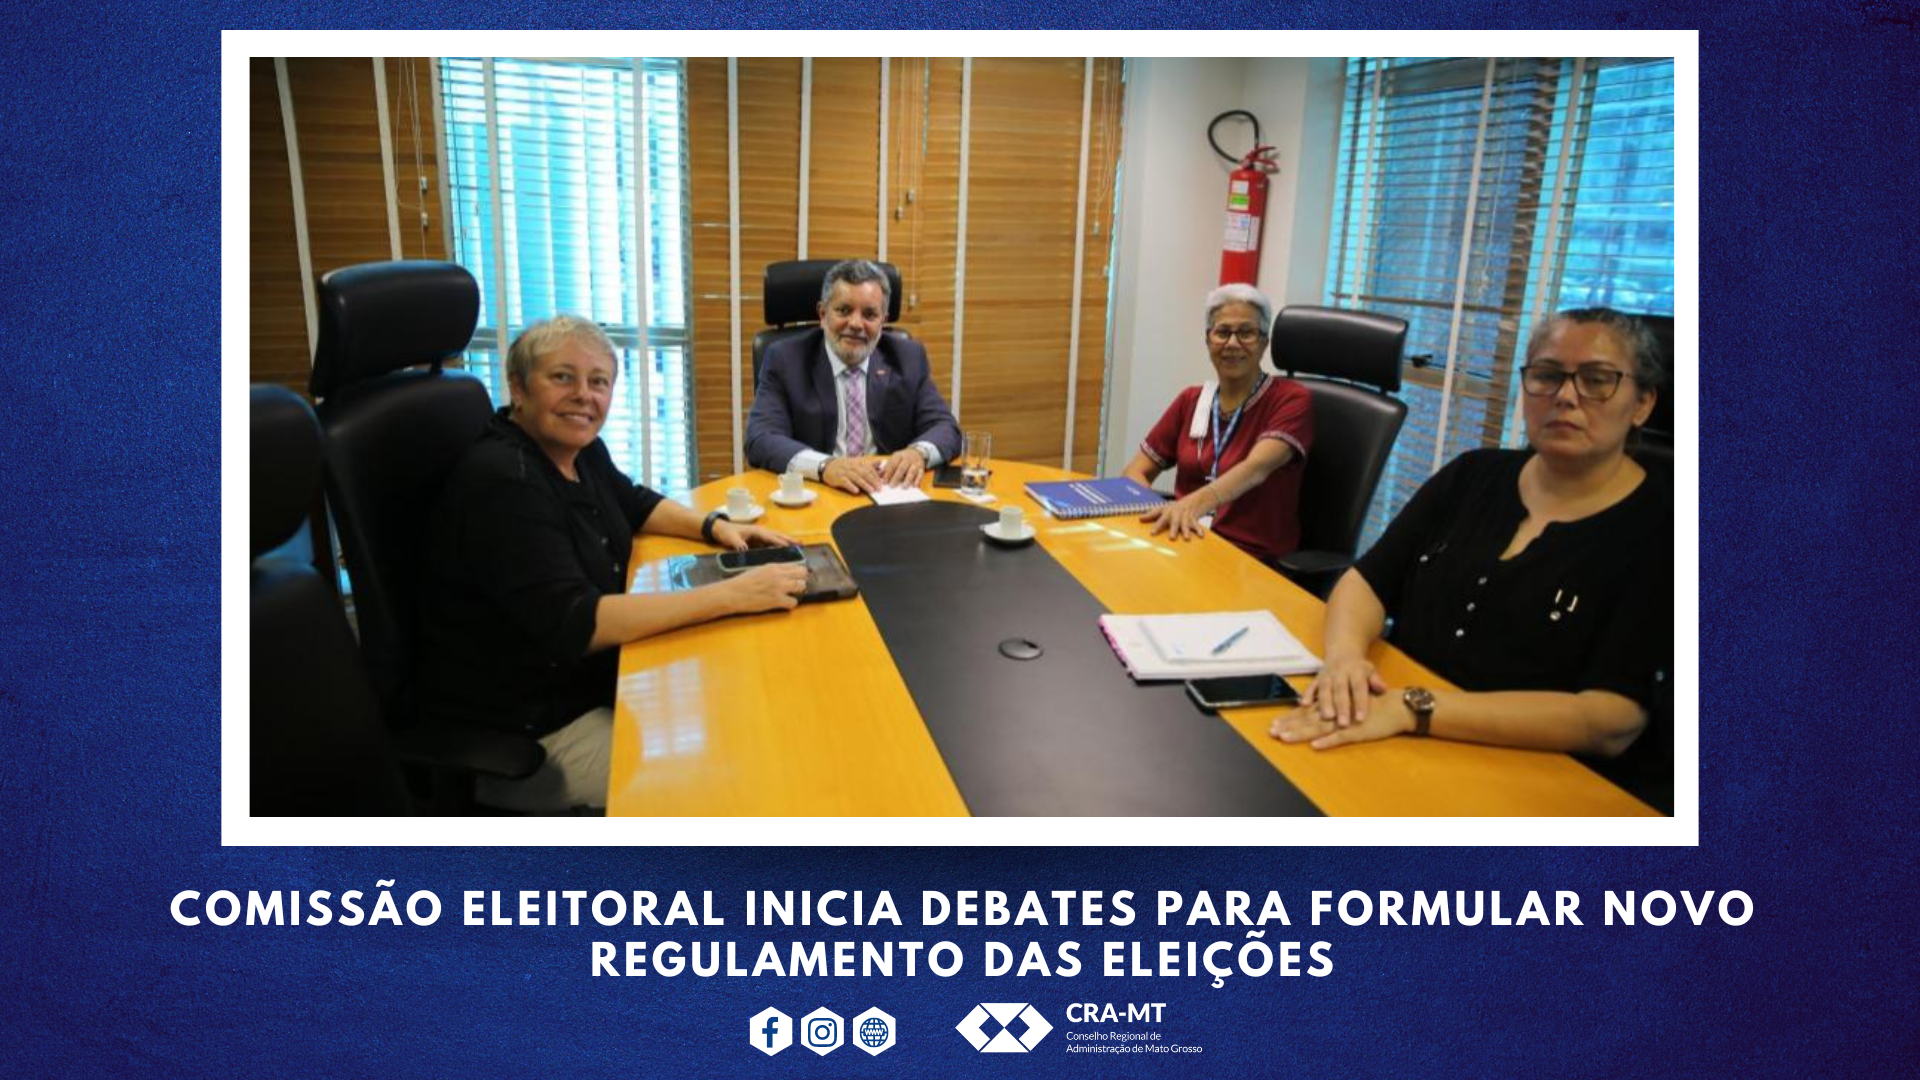 You are currently viewing Comissão Eleitoral inicia debates para formular novo regulamento das eleições